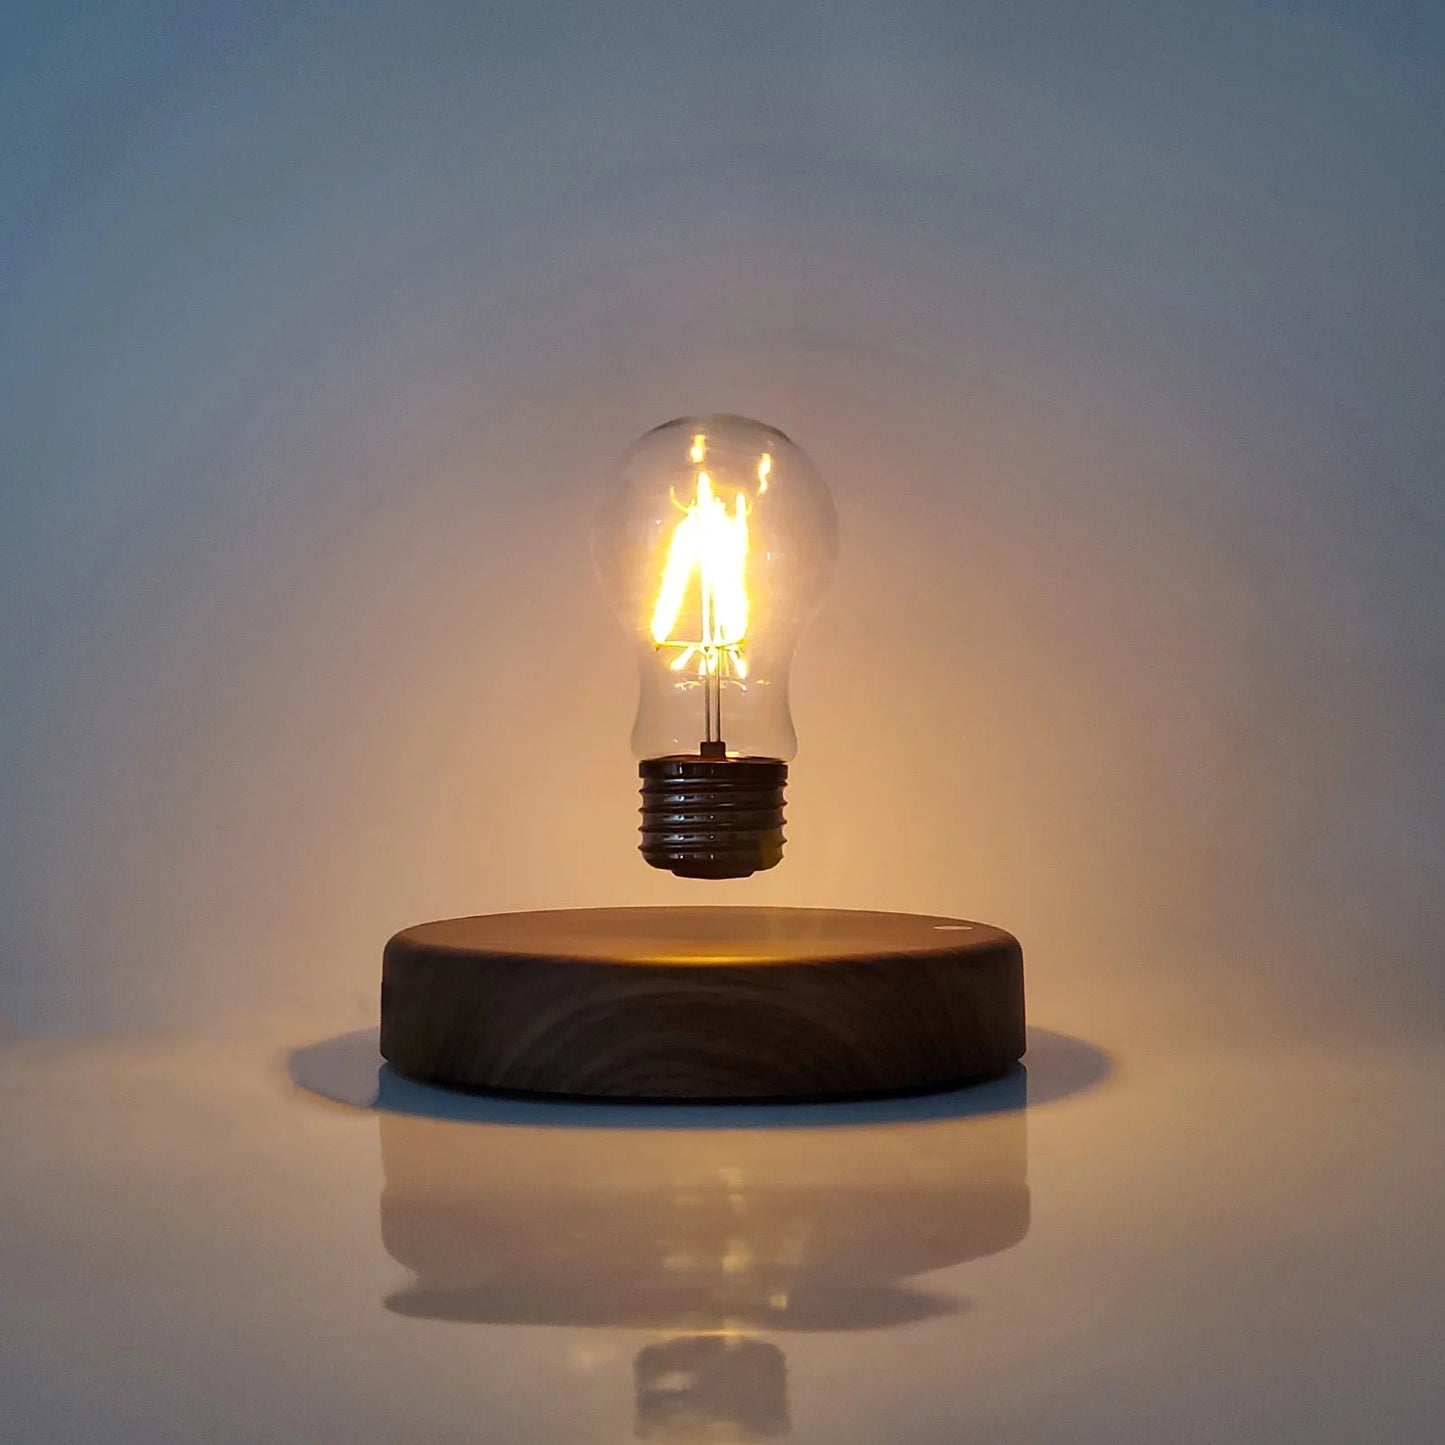 Floating Light Bulb for Bedroom Bedside Decorative Ambiance